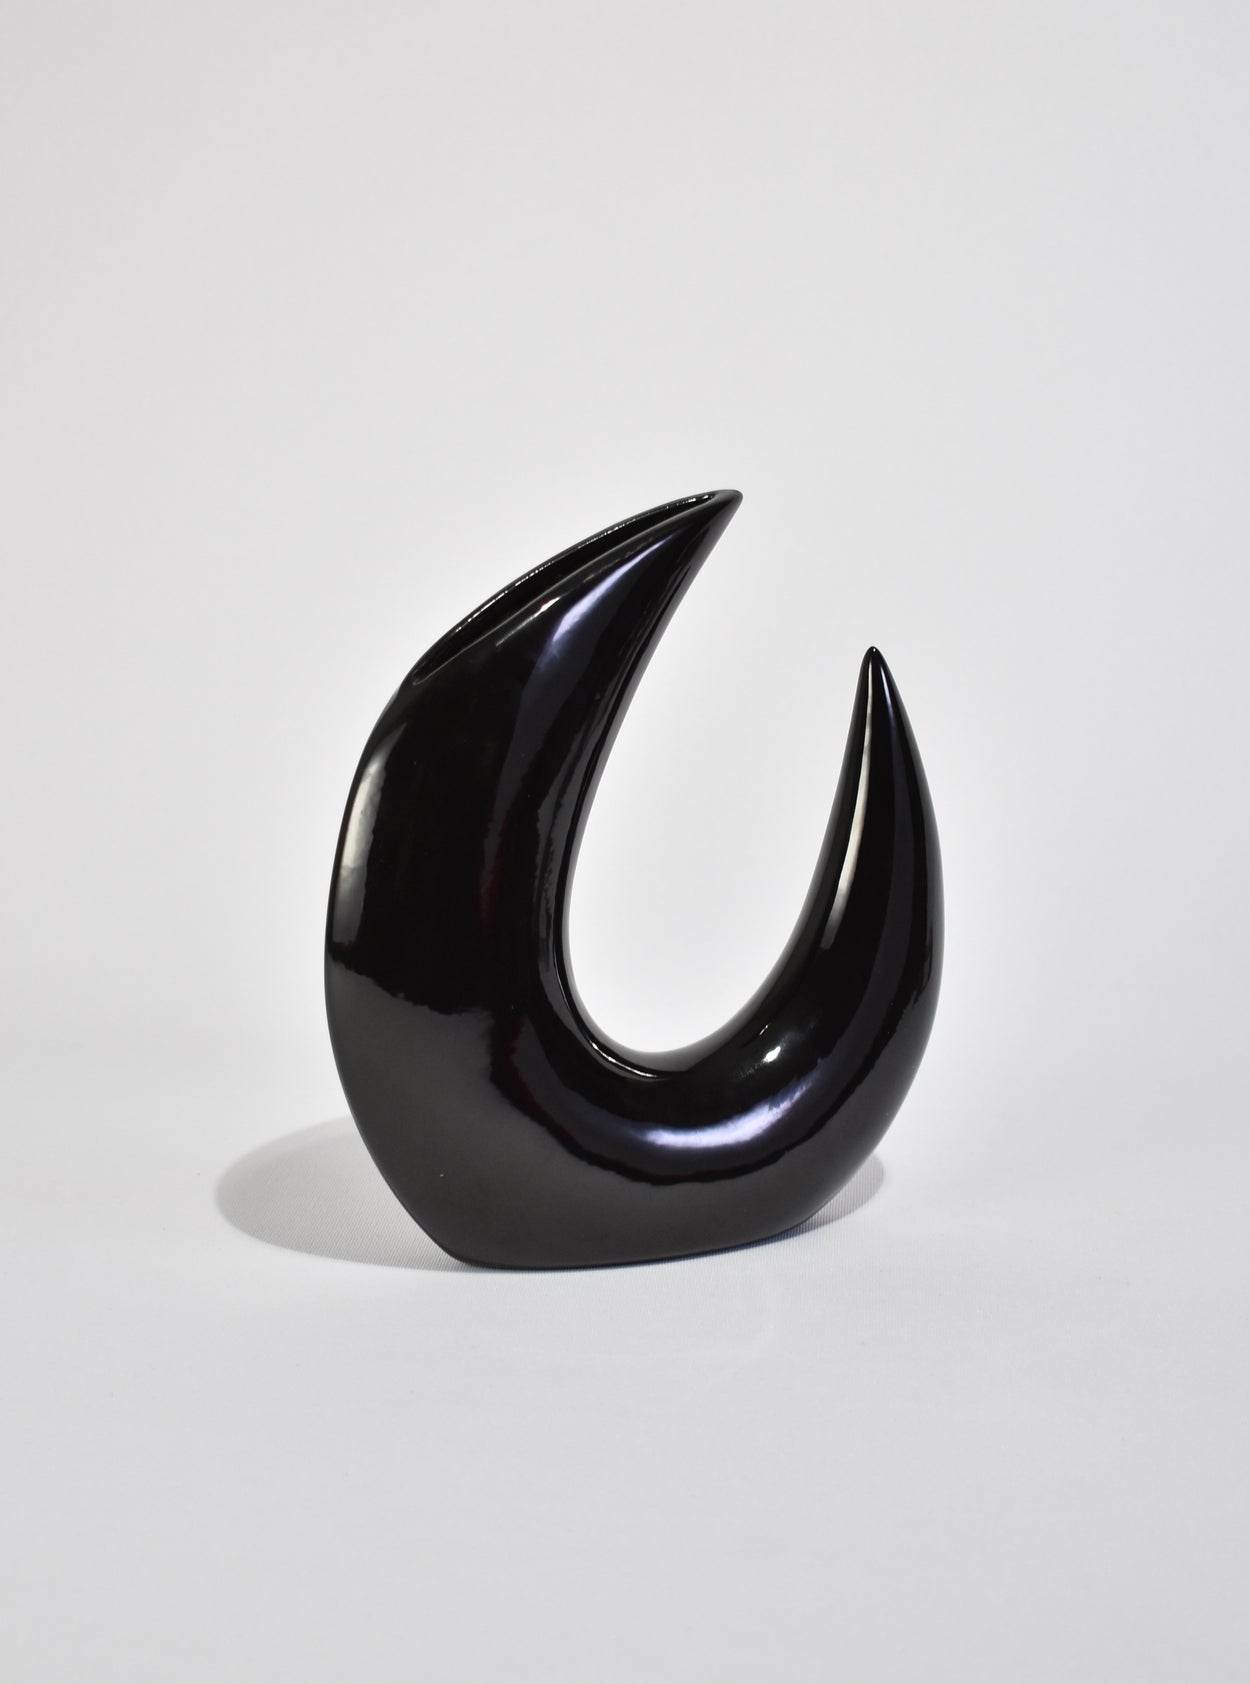 Curved Black Vase